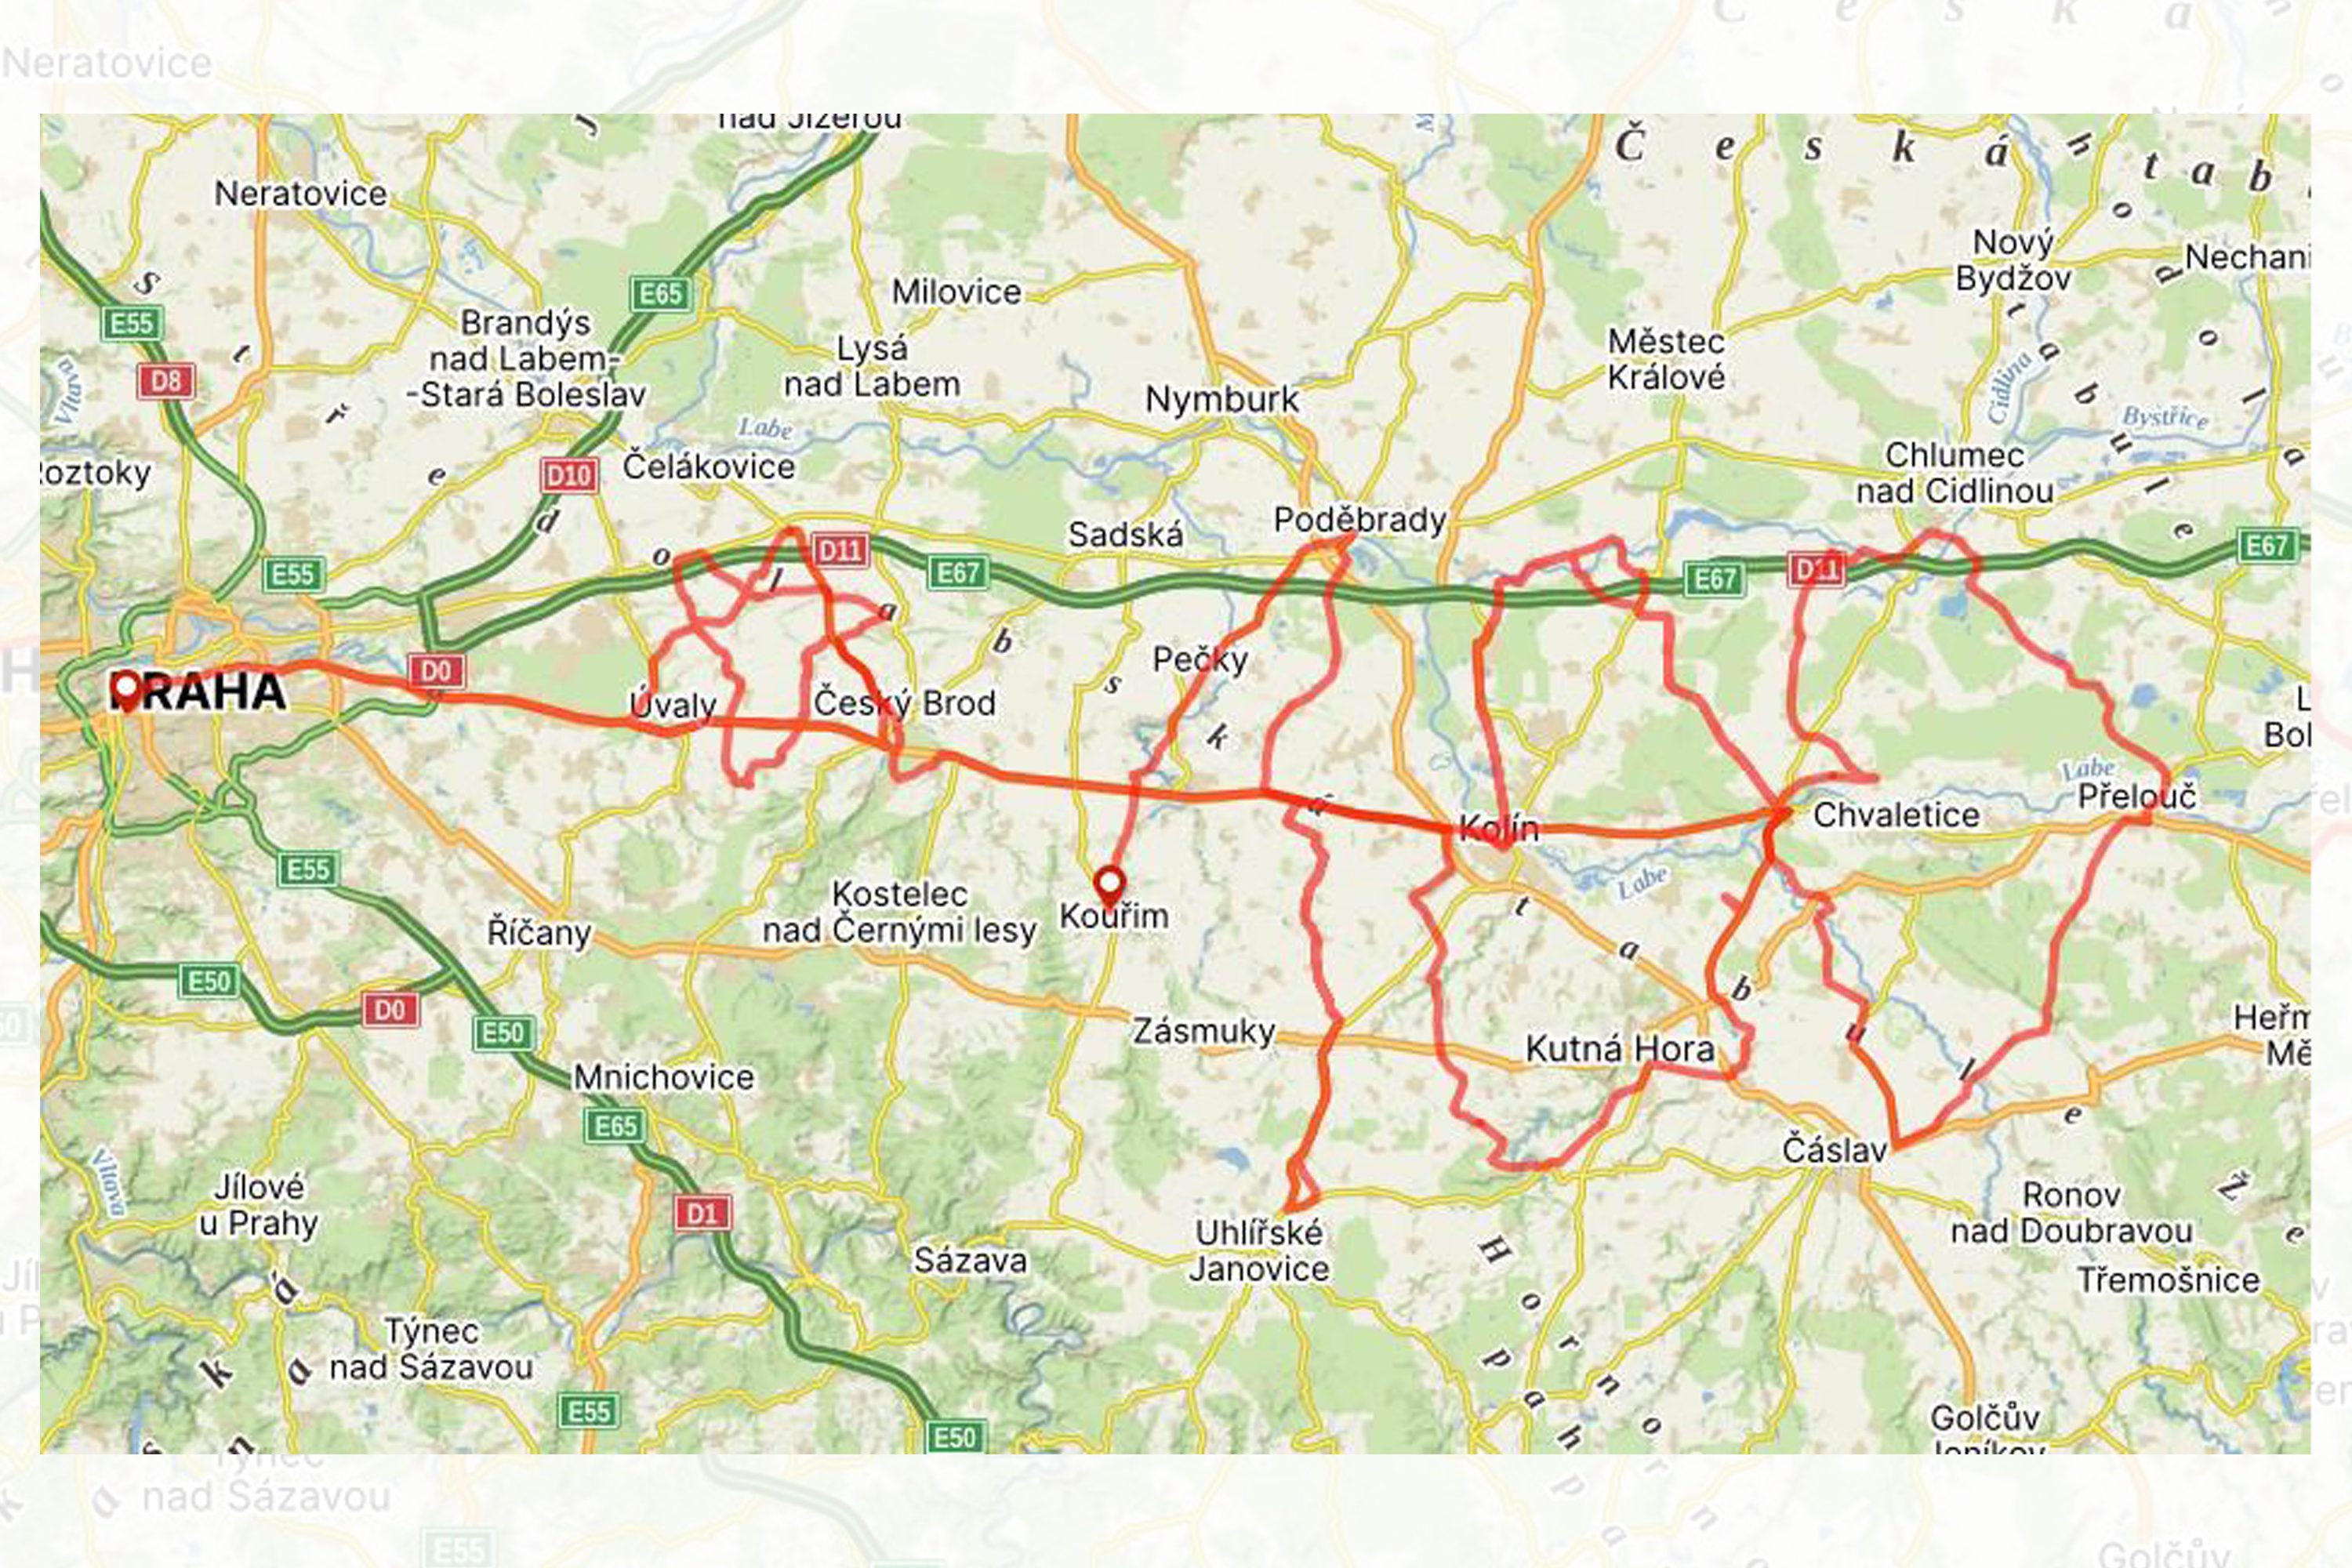 Lukáš Klement's proposed 24-hour challenge route